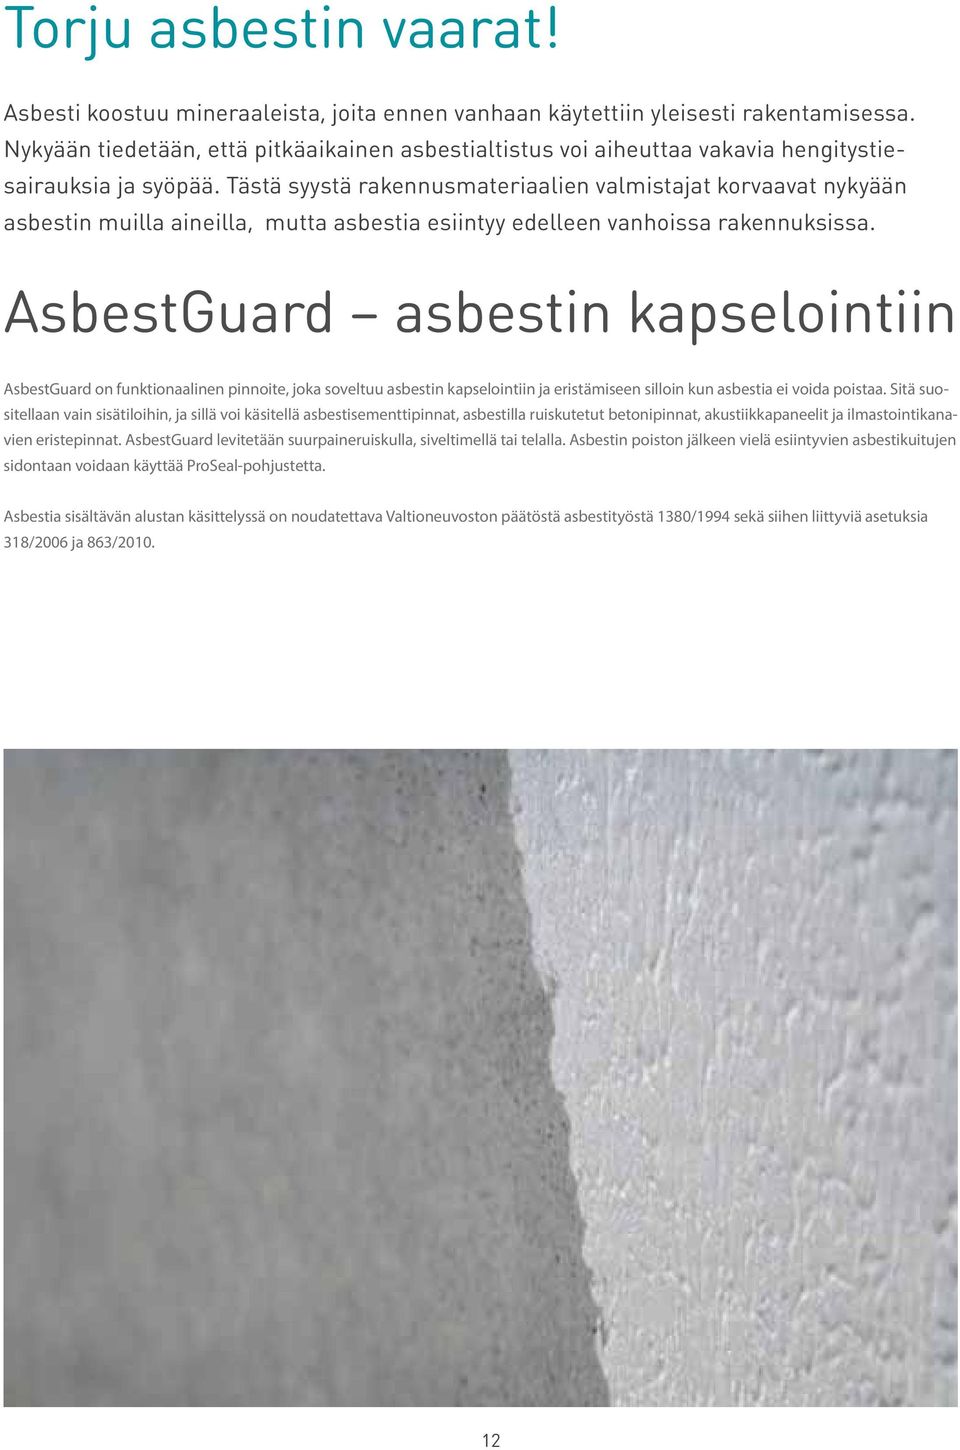 Tästä syystä rakennusmateriaalien valmistajat korvaavat nykyään asbestin muilla aineilla, mutta asbestia esiintyy edelleen vanhoissa rakennuksissa.